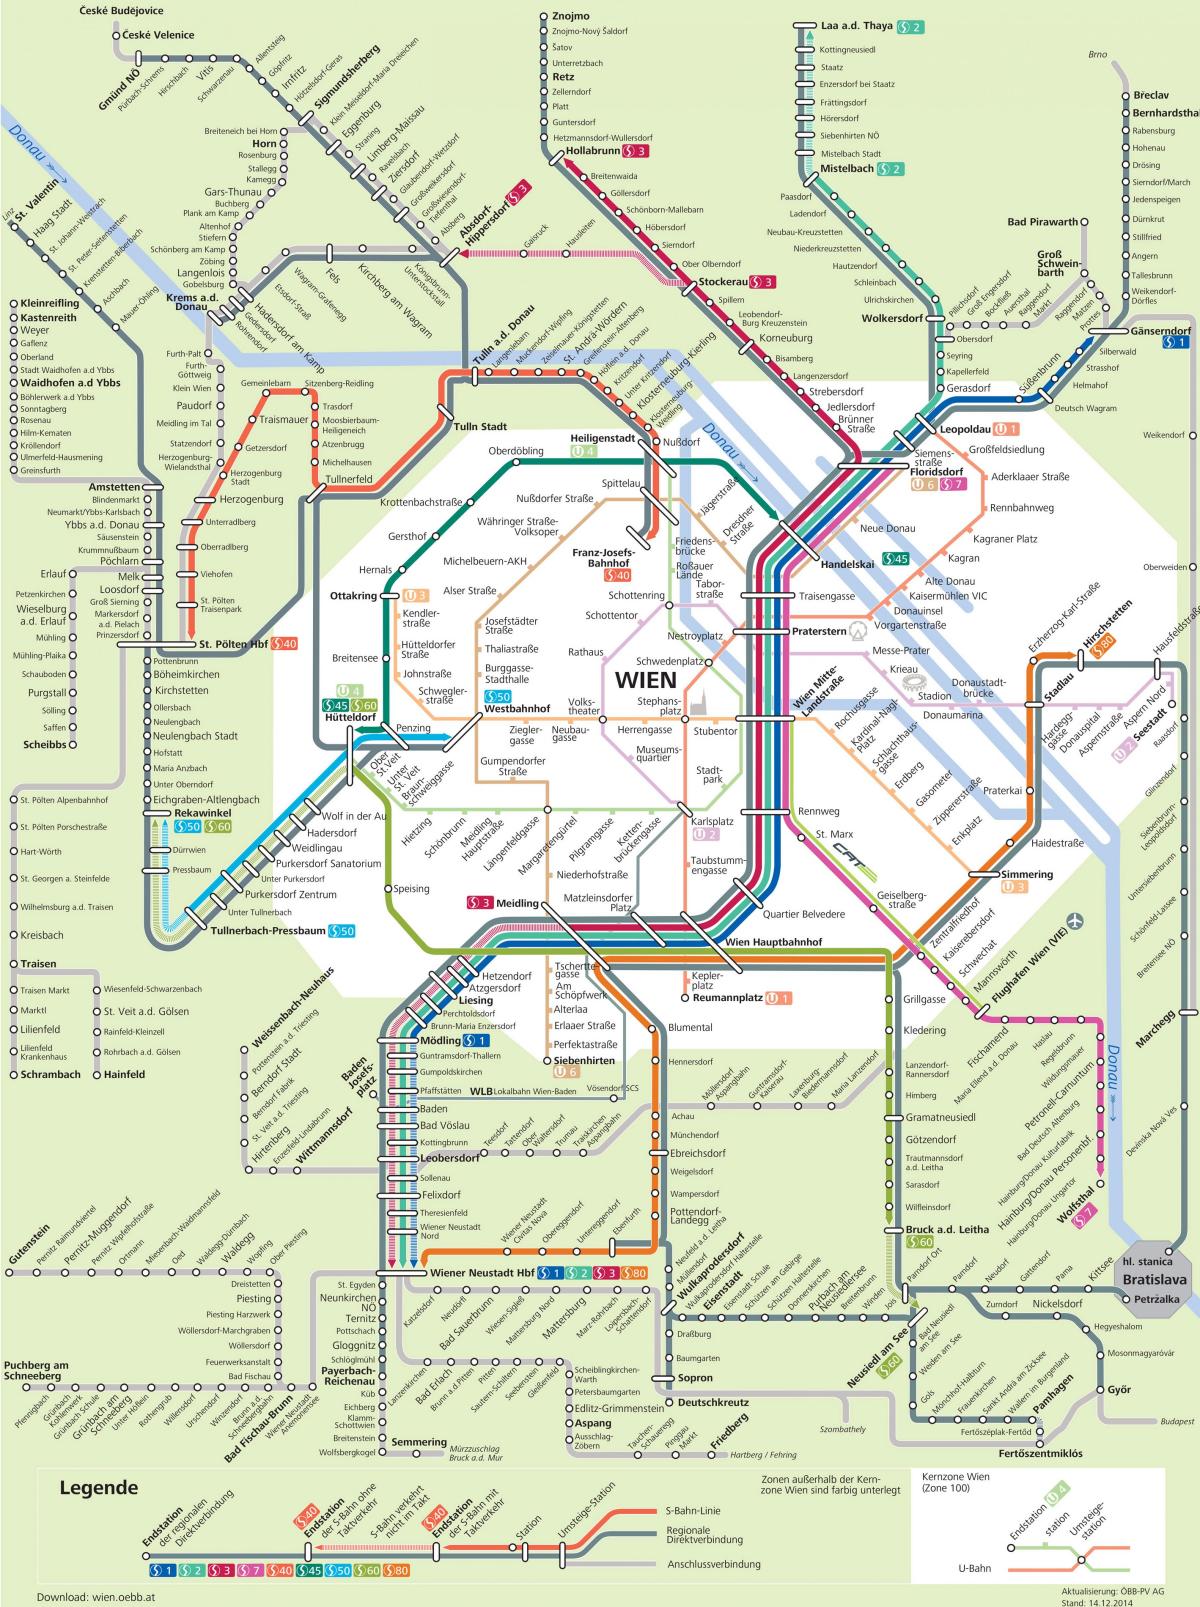 Виена лесна железница мапа